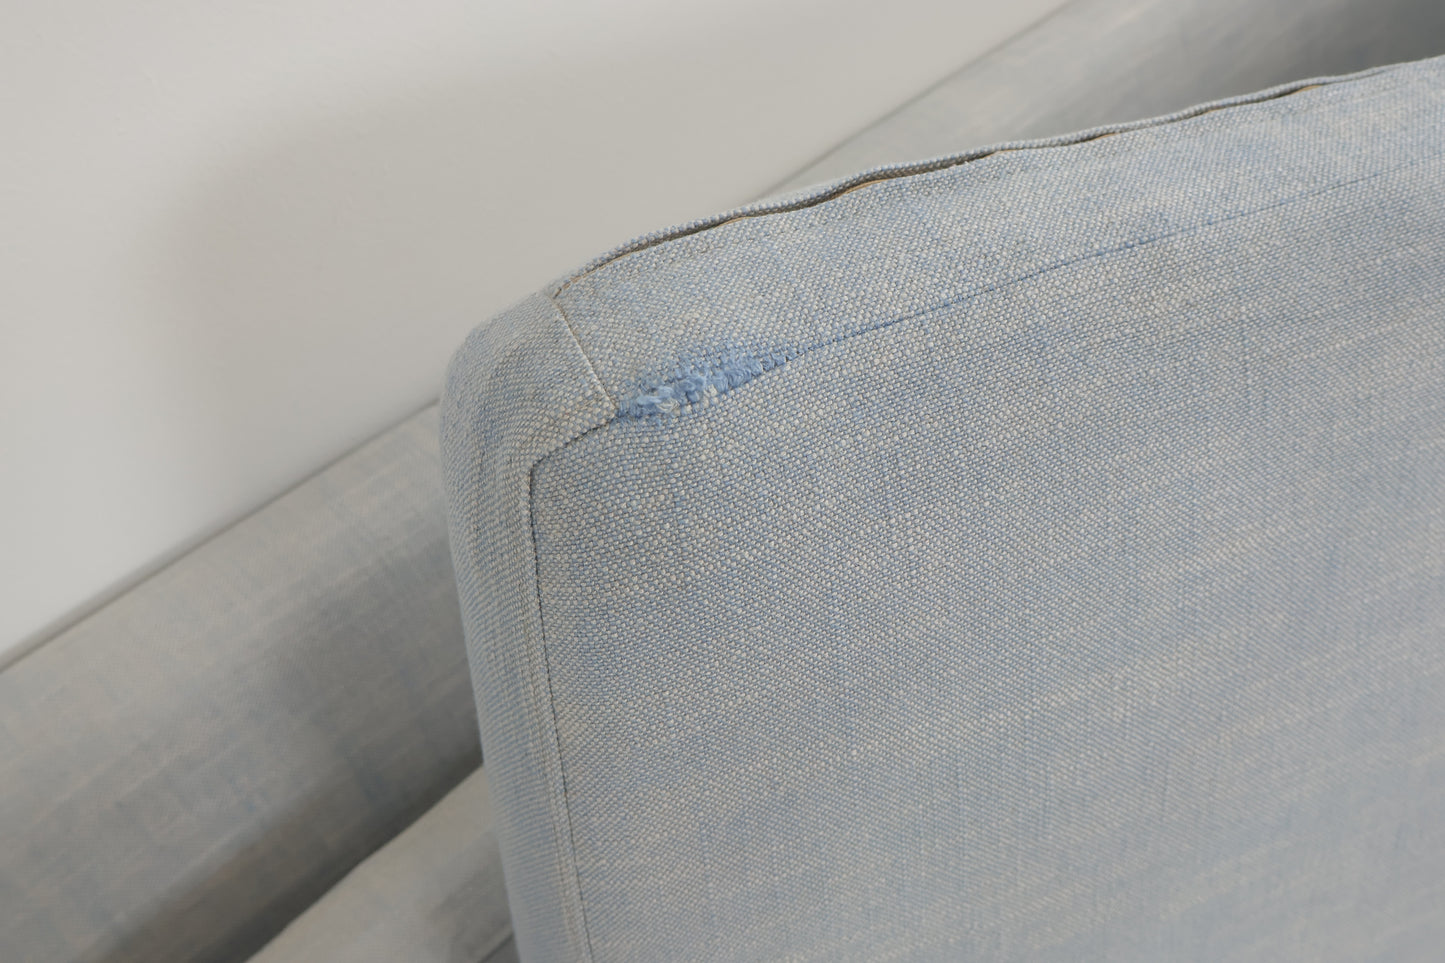 Nyrenset | Grå/blå Slettvoll 3-seter sofa med åpen ende